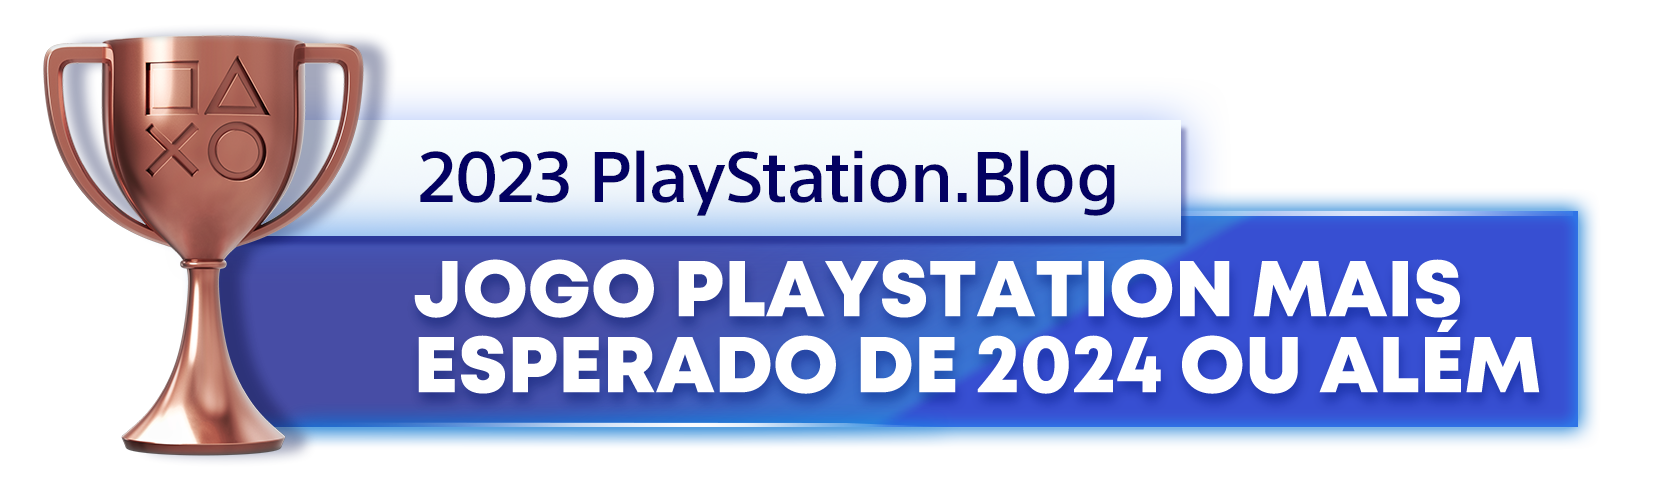  "Troféu de Bronze para o vencedor da categoria Jogo PlayStation mais esperado de 2024 ou além, do ano de 2023 do Playstation Blog"